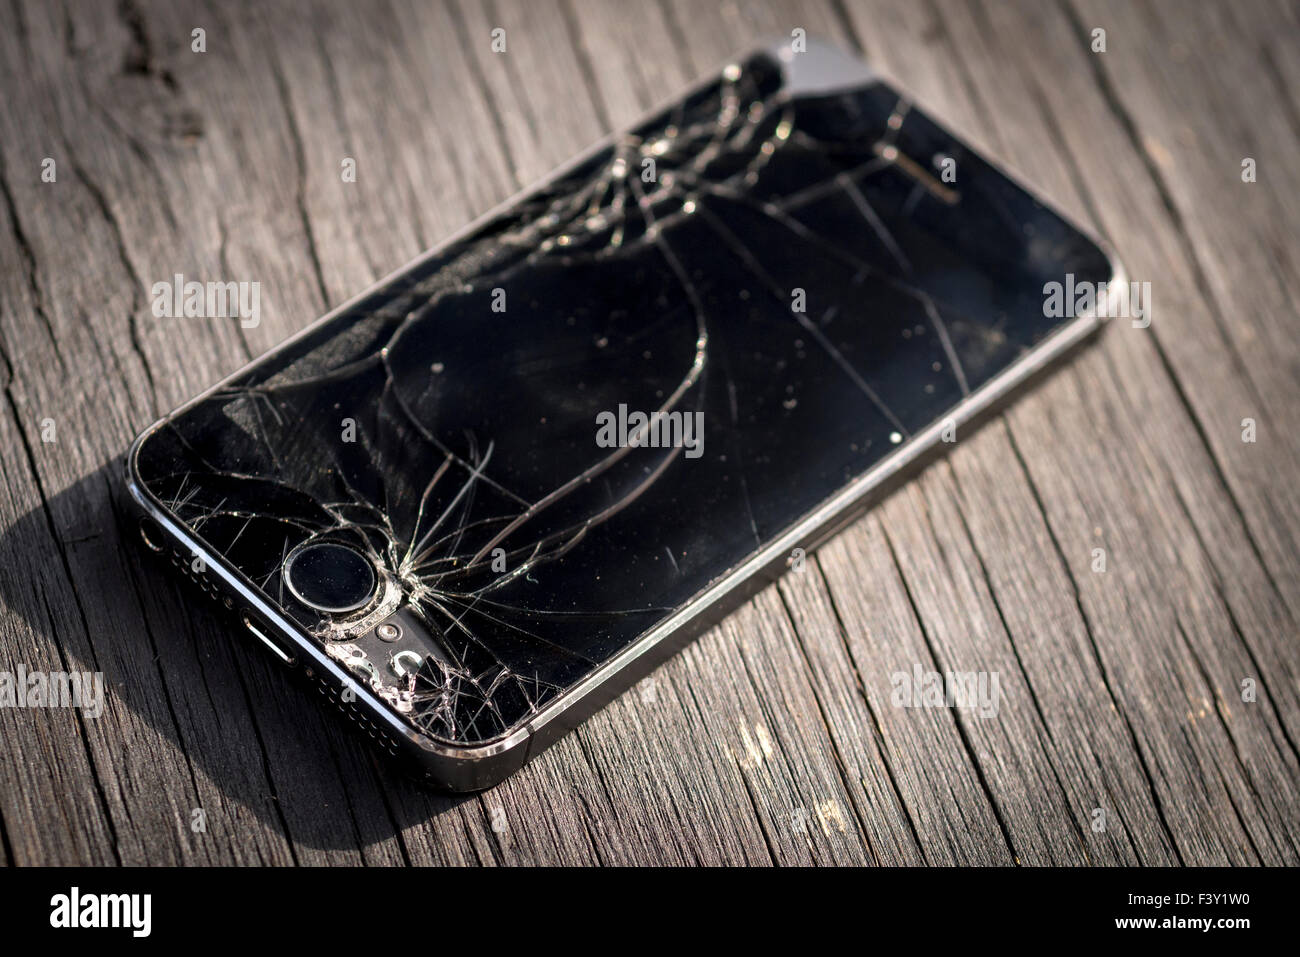 Apple Iphone 5 s mit einem gebrochenen Bildschirm Stockfoto